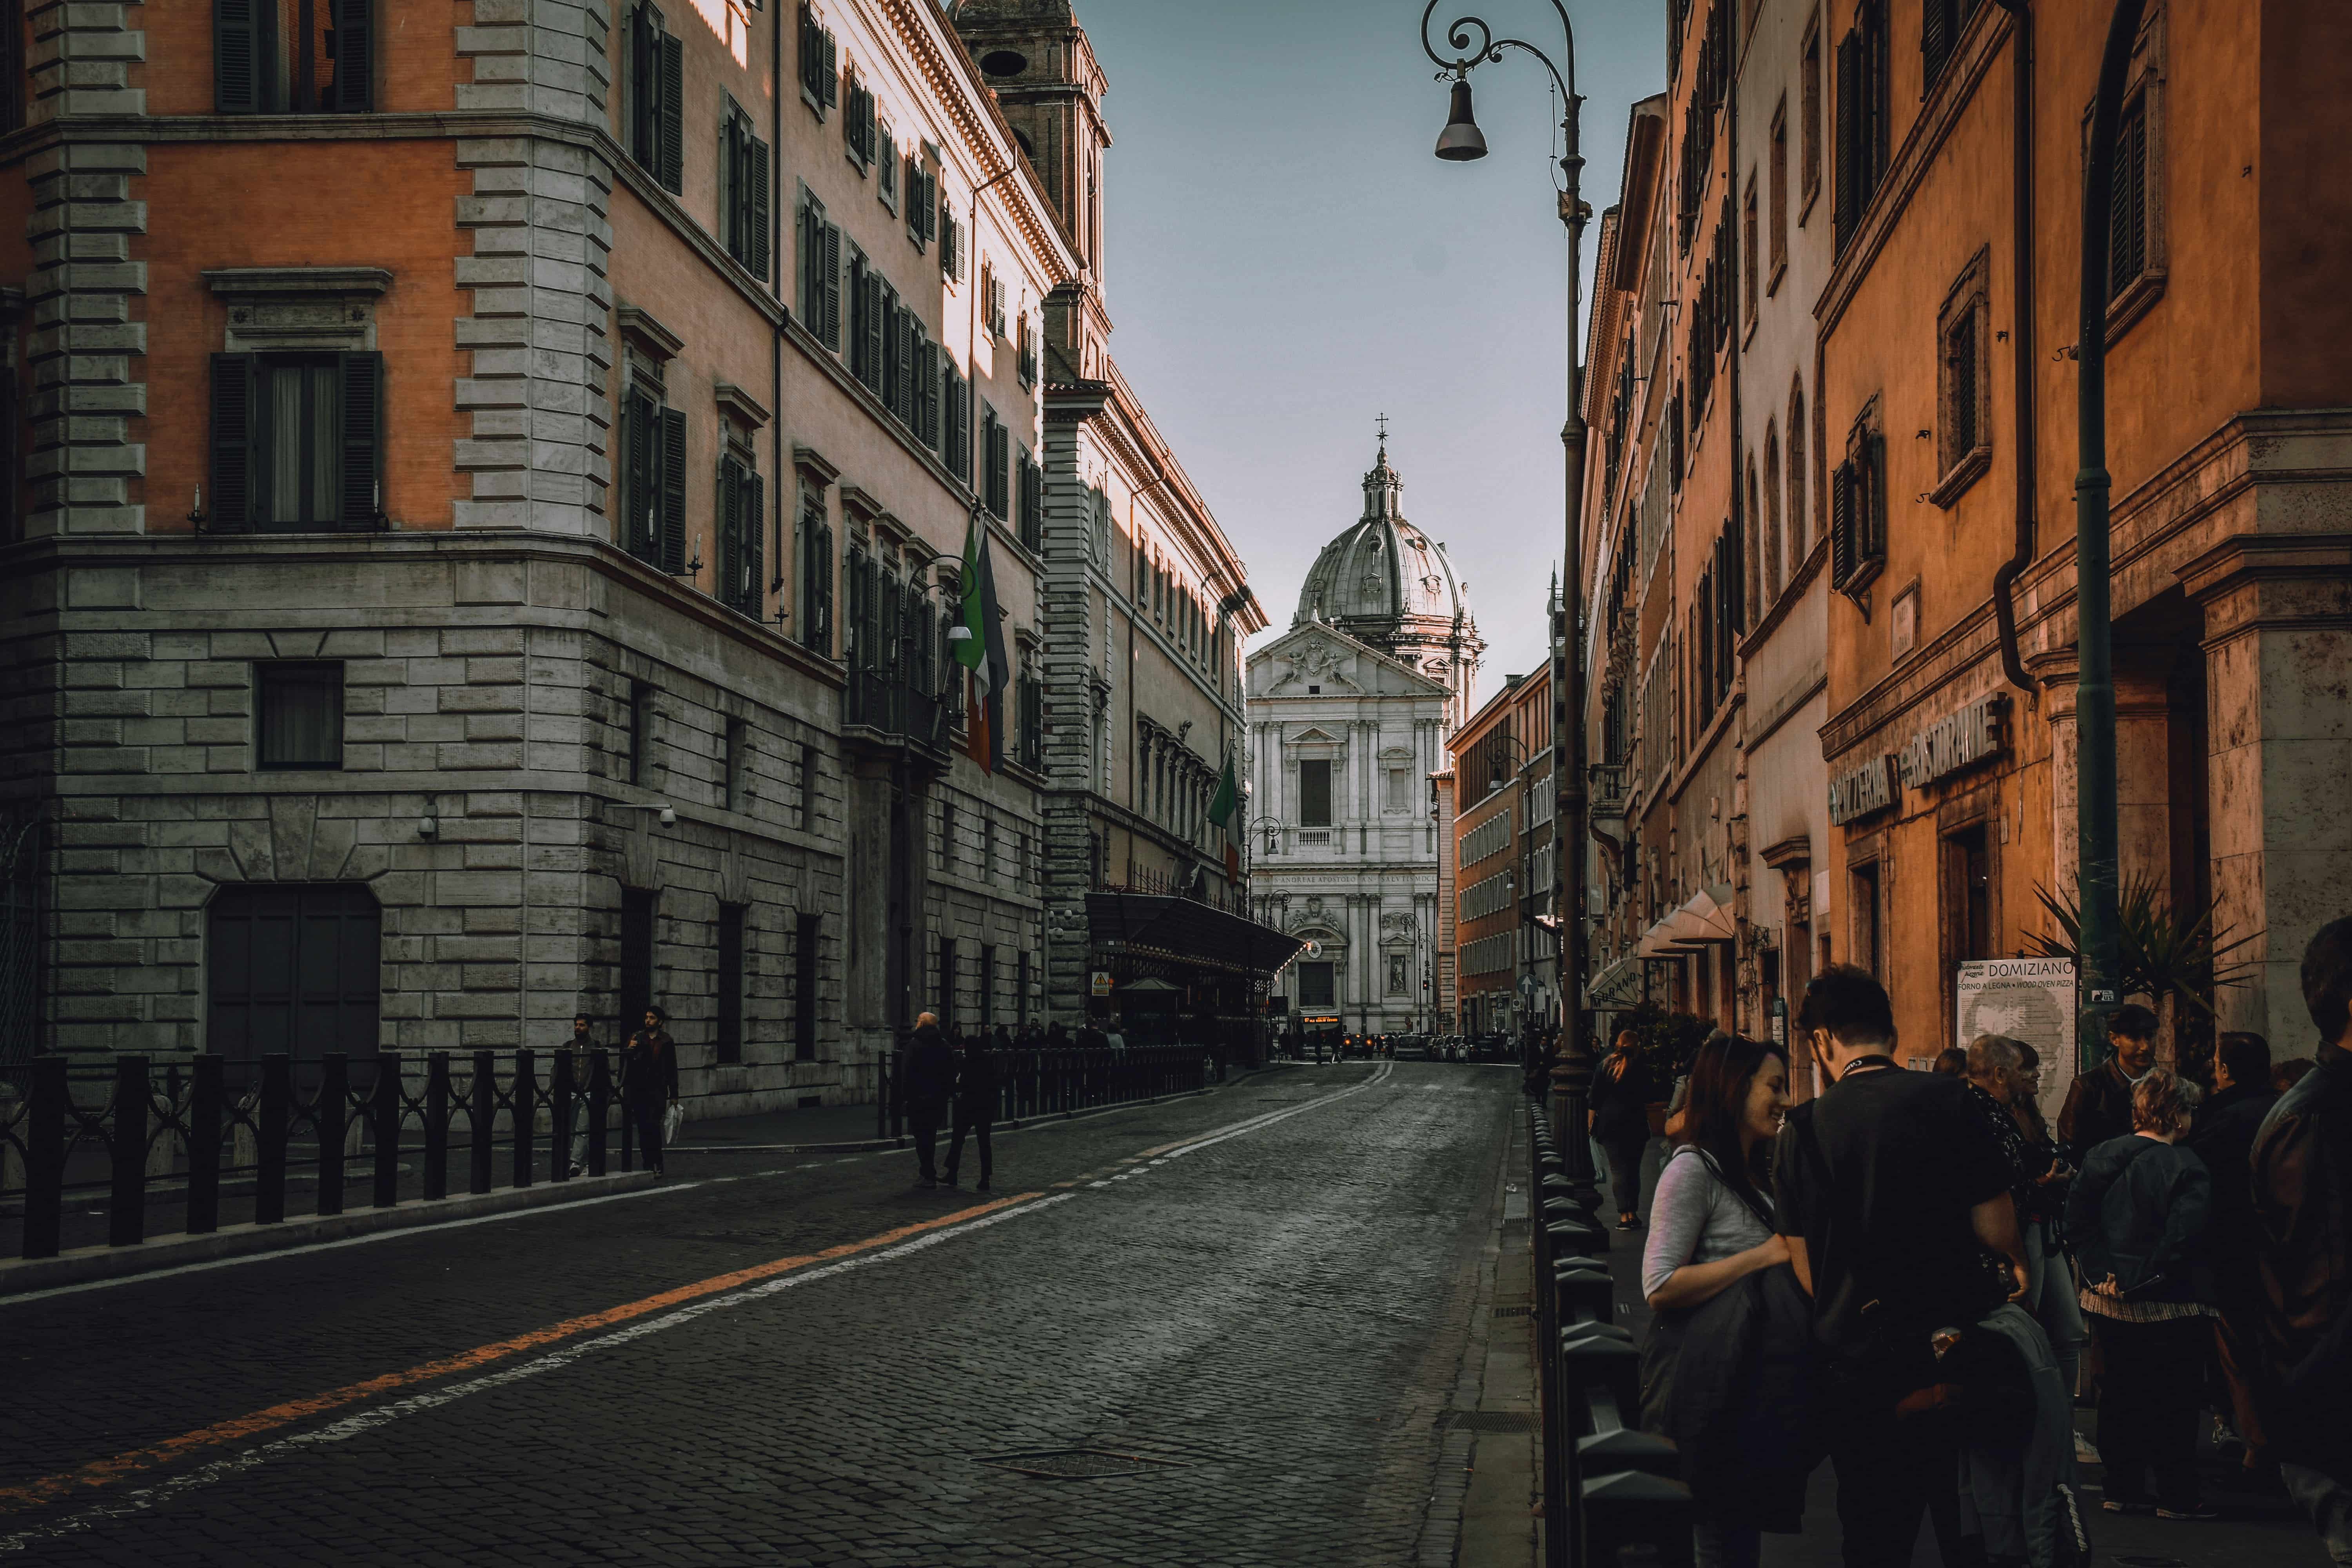 A narrow street in Rome, Italy